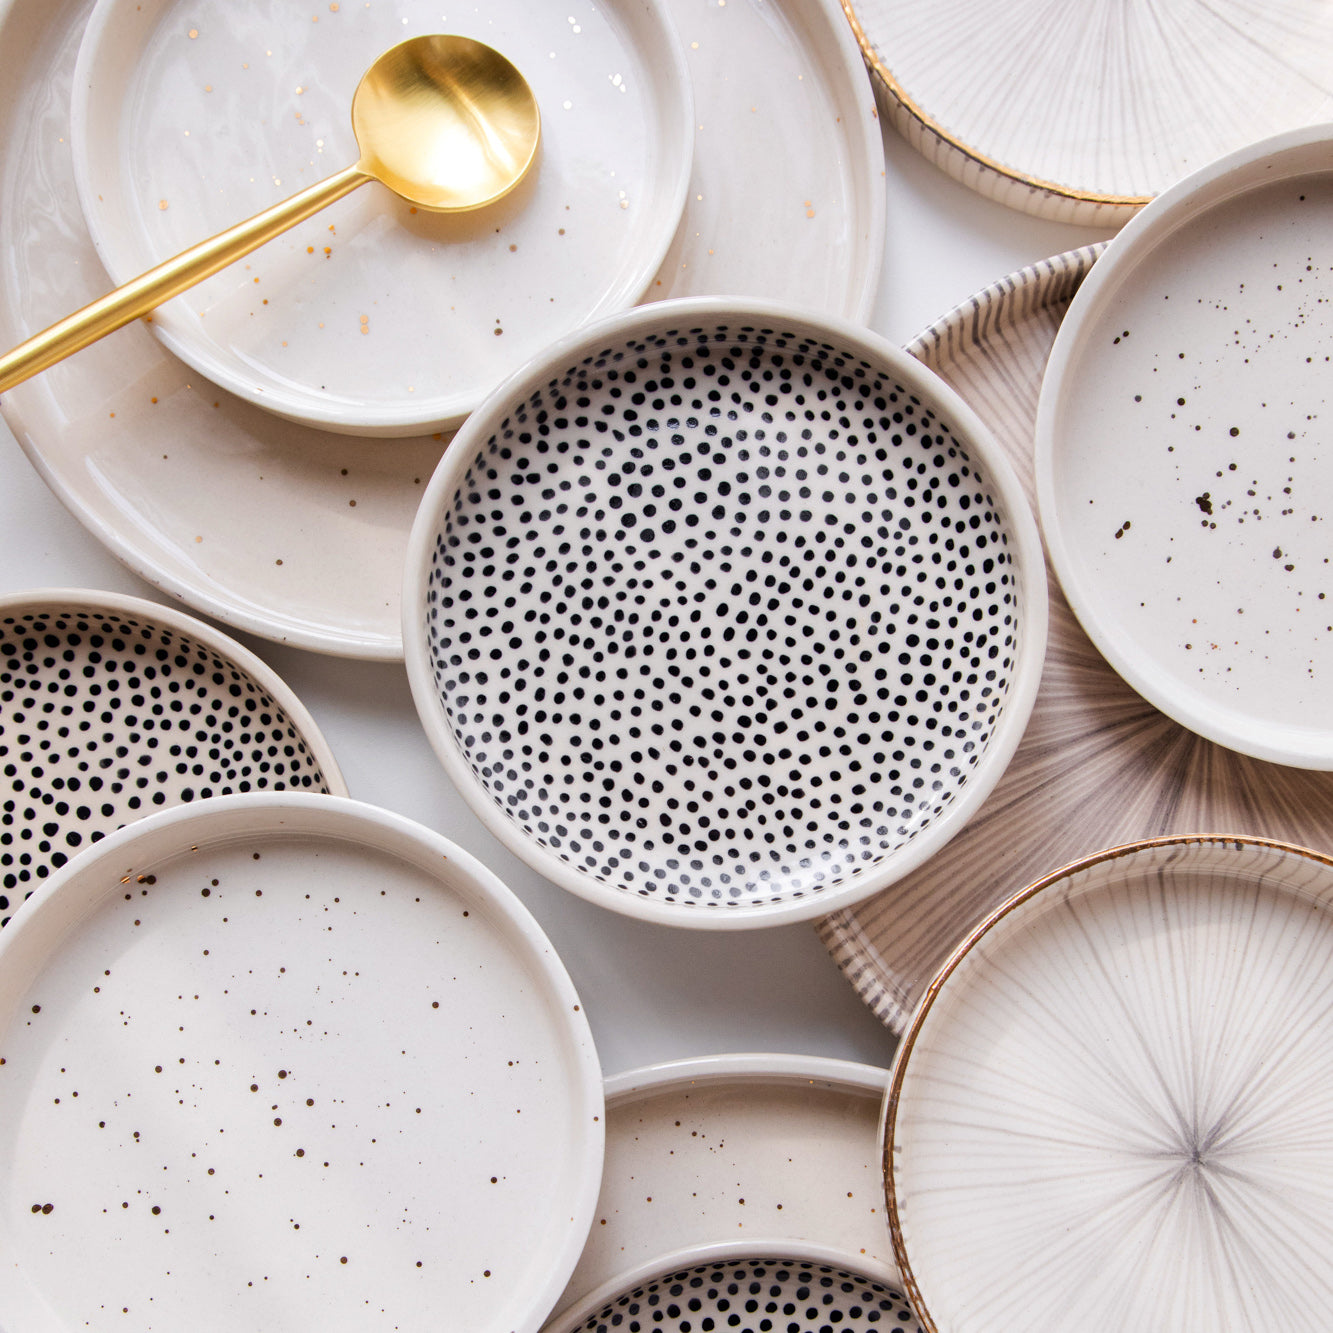 Ceramic Plates